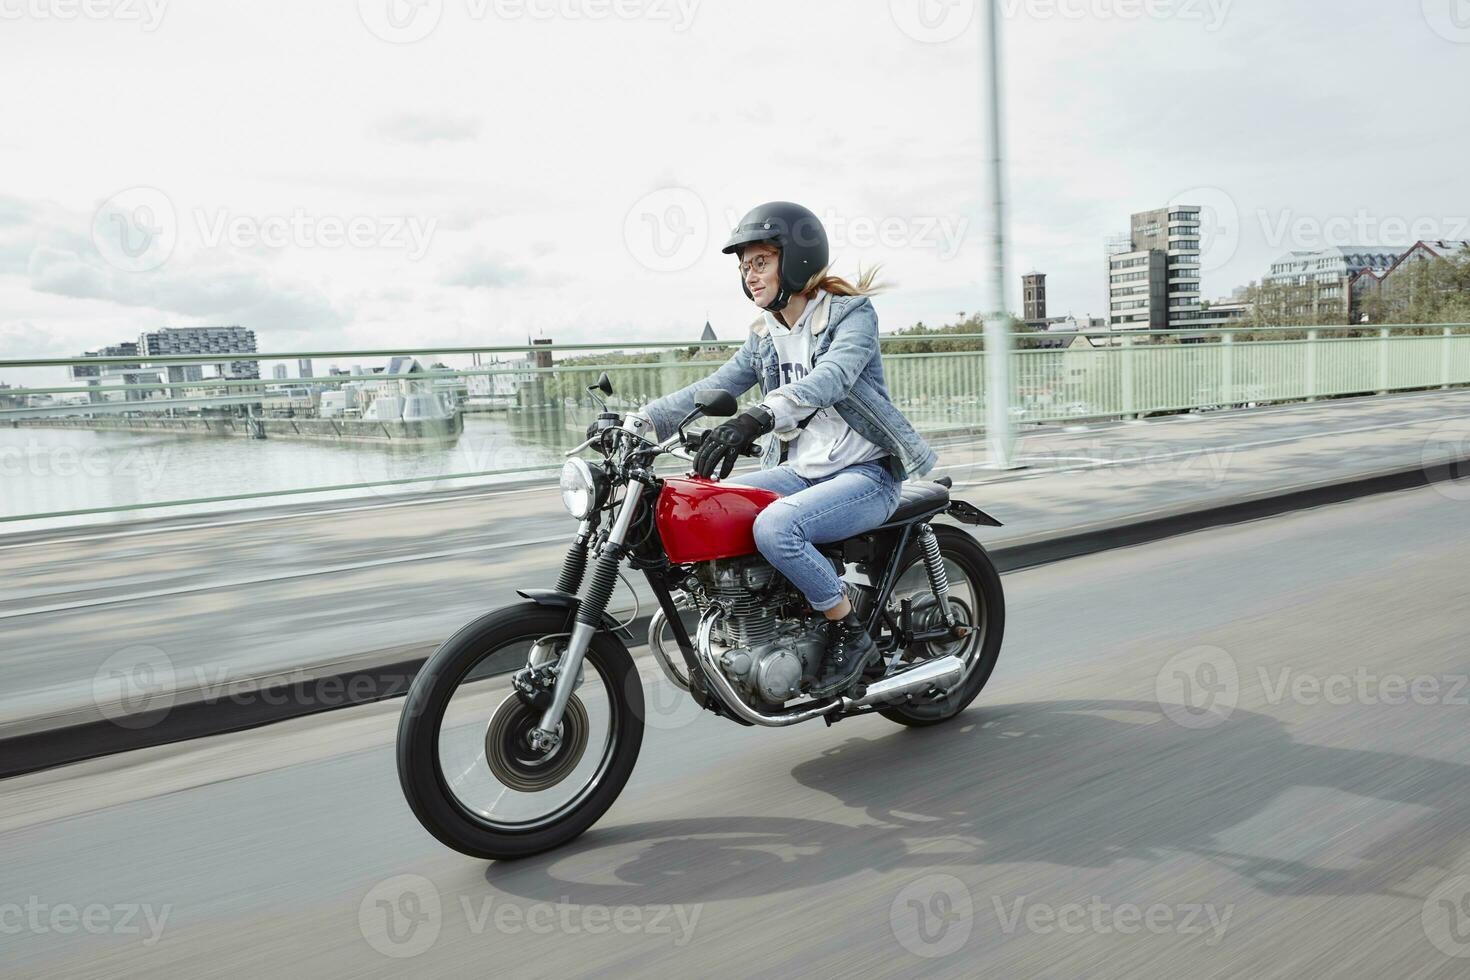 Alemania, Colonia, joven mujer montando motocicleta en puente foto